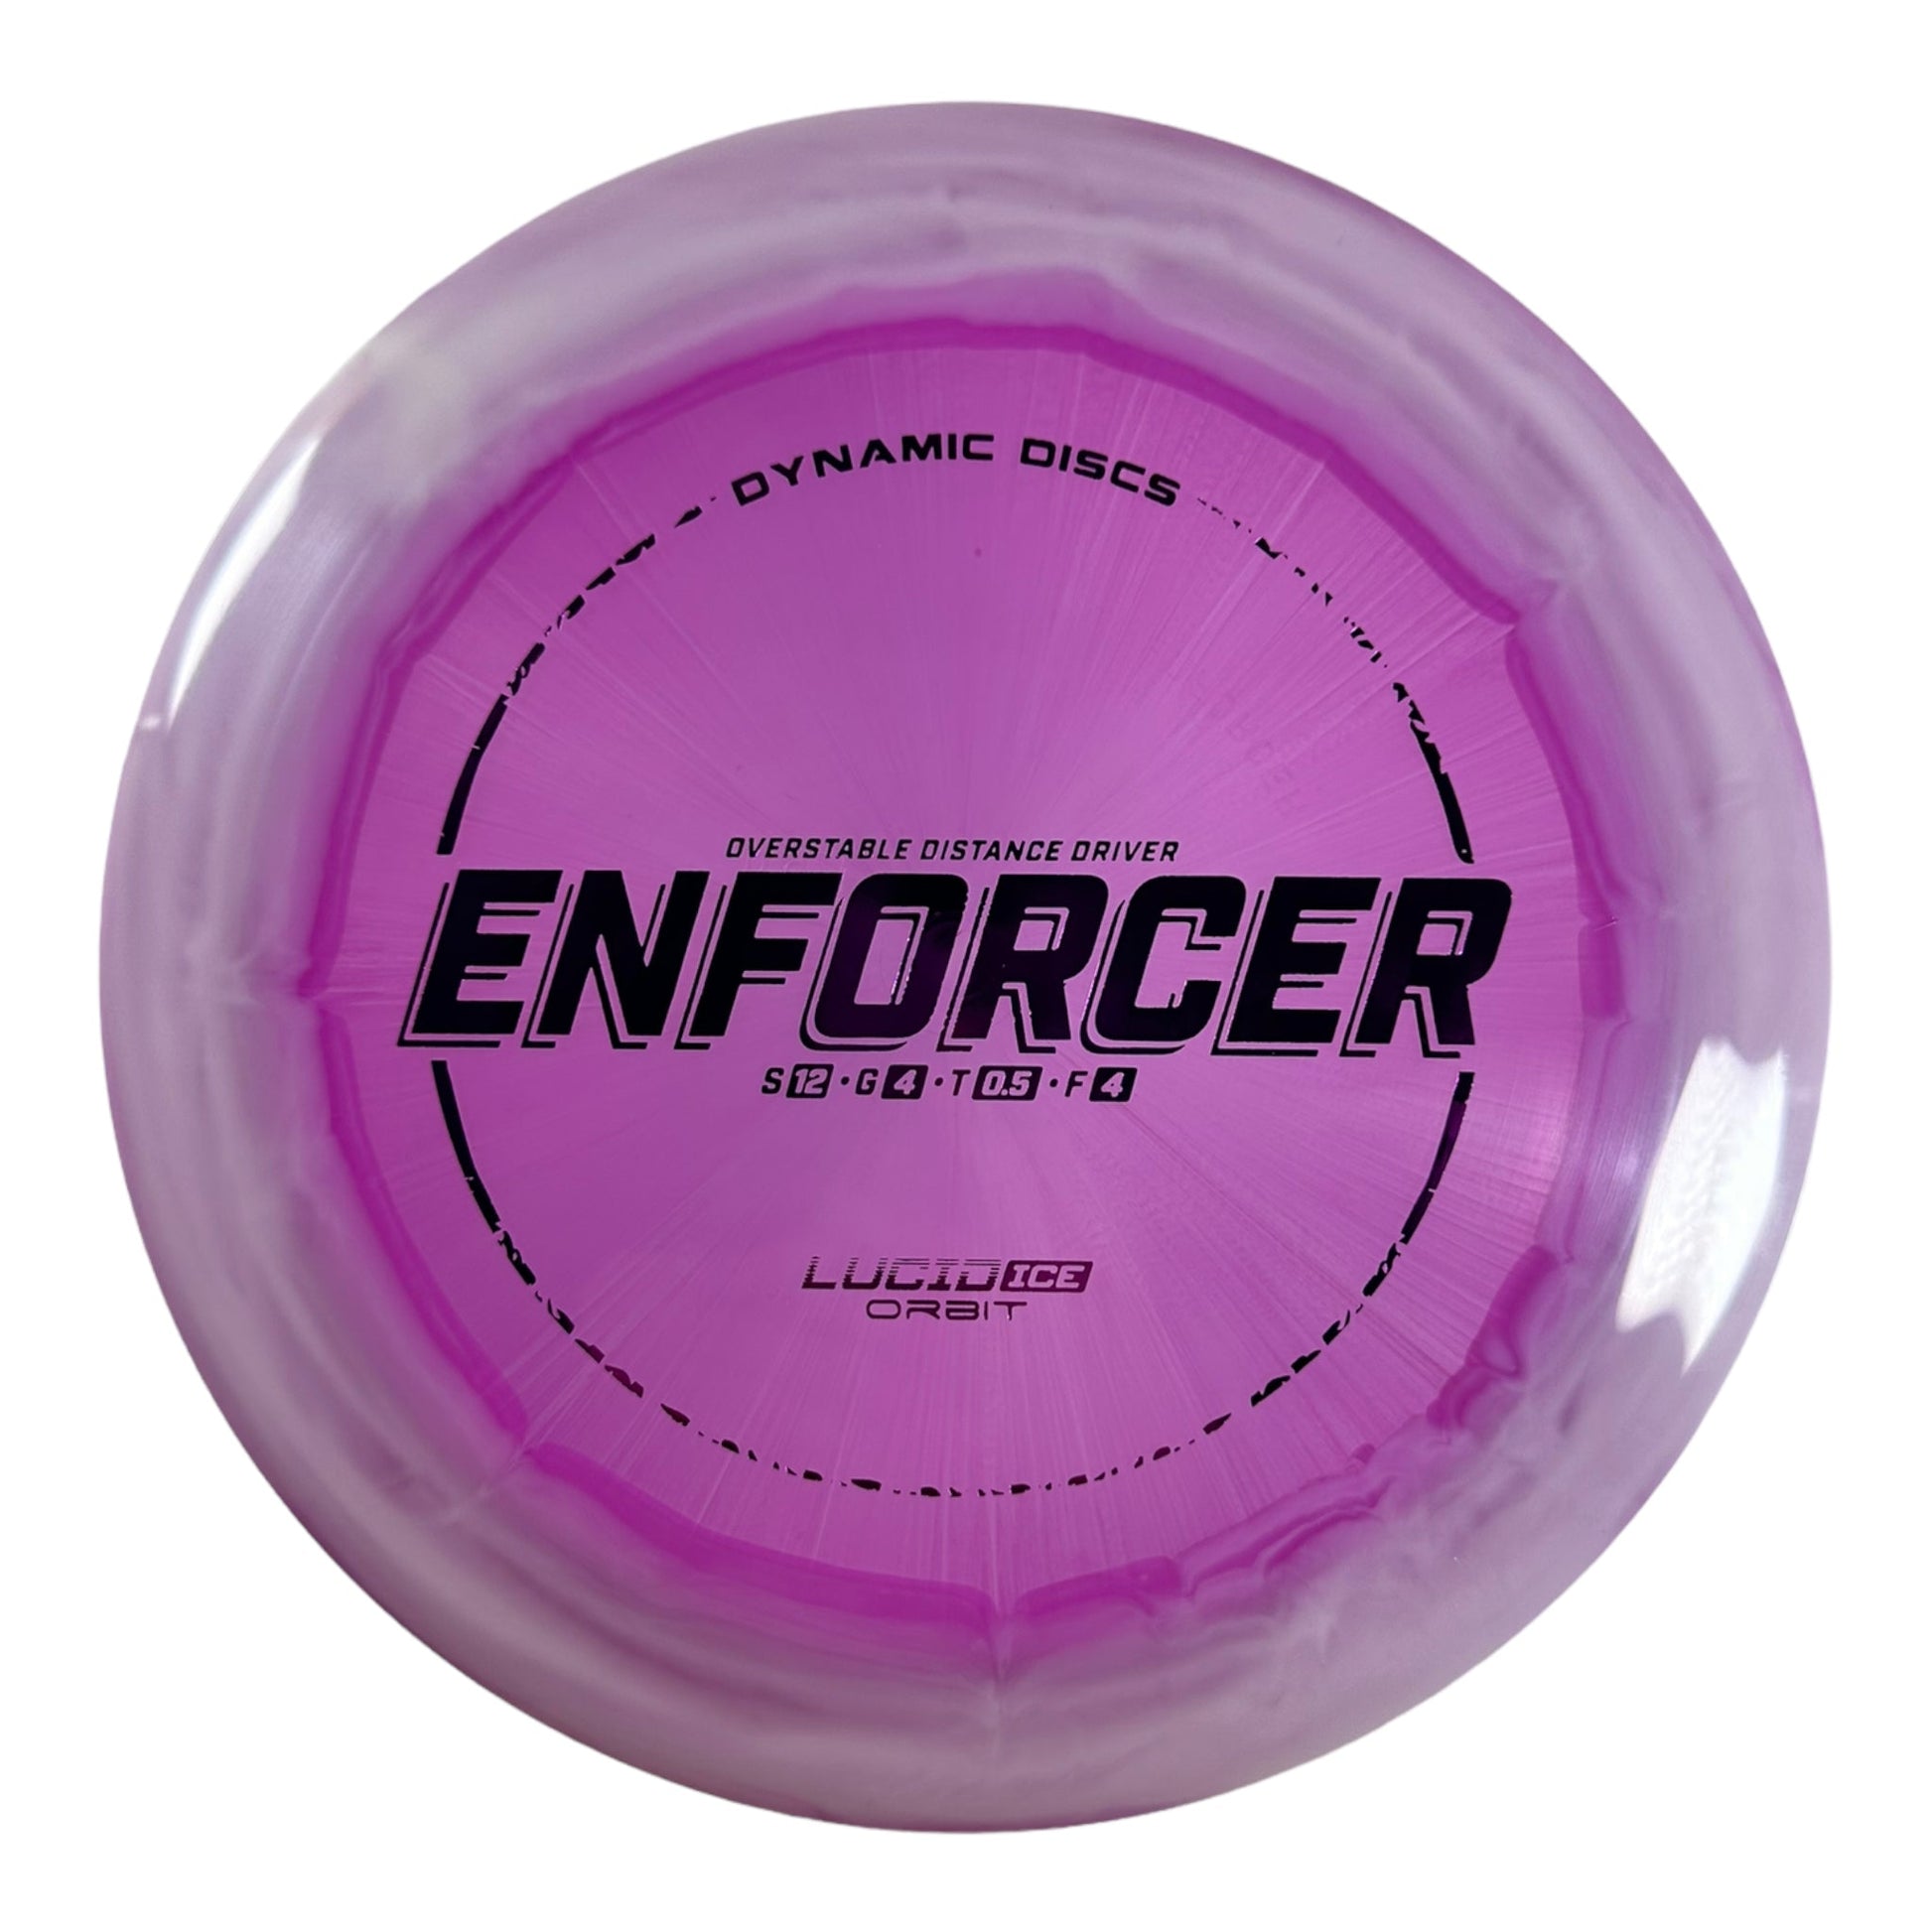 Dynamic Discs Enforcer | Lucid Ice Orbit | Purple/Purple 175g Disc Golf